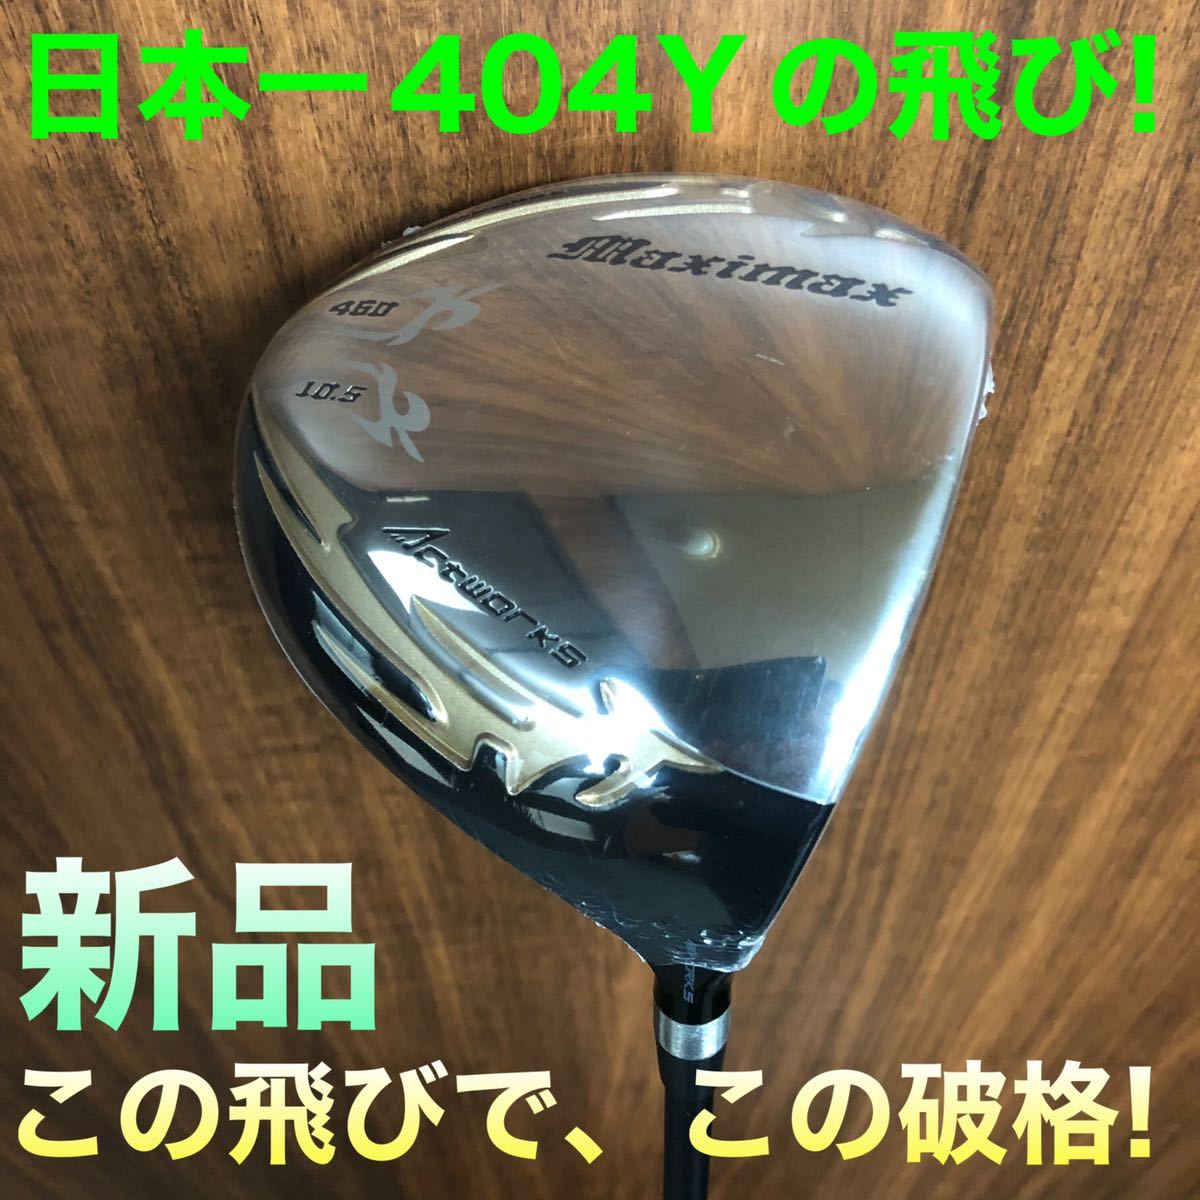 【新品最安値】日本一404Yで ゼクシオ ZX5 ステルス SIM2 パラダイム TSR3 G430 より飛んで爆安 ワークスゴルフ マキシマックス ドライバーの画像1